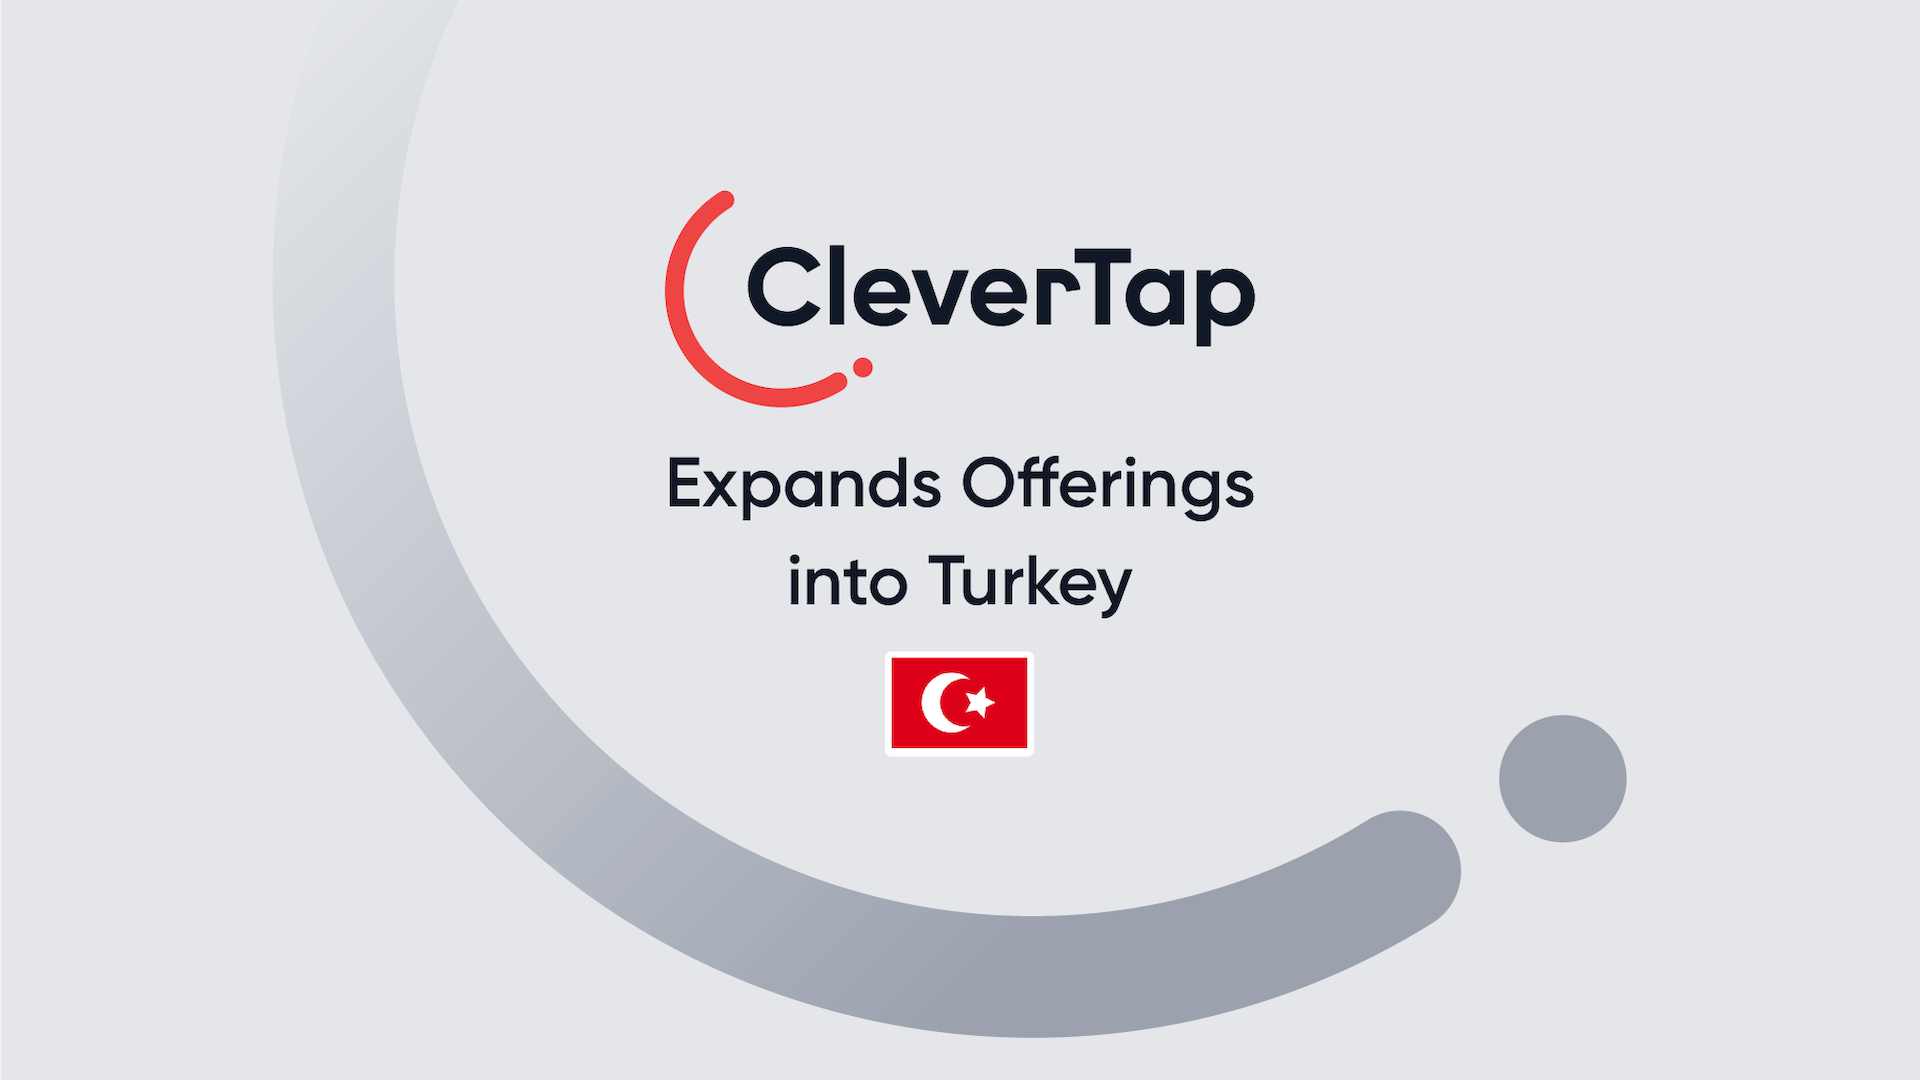 Mobil Pazarlama Platformu CleverTap, Orta Doğu'daki Büyük Çaplı Büyümesi İçinde Türkiye'ye Sunduğu Fırsatları Genişletiyor